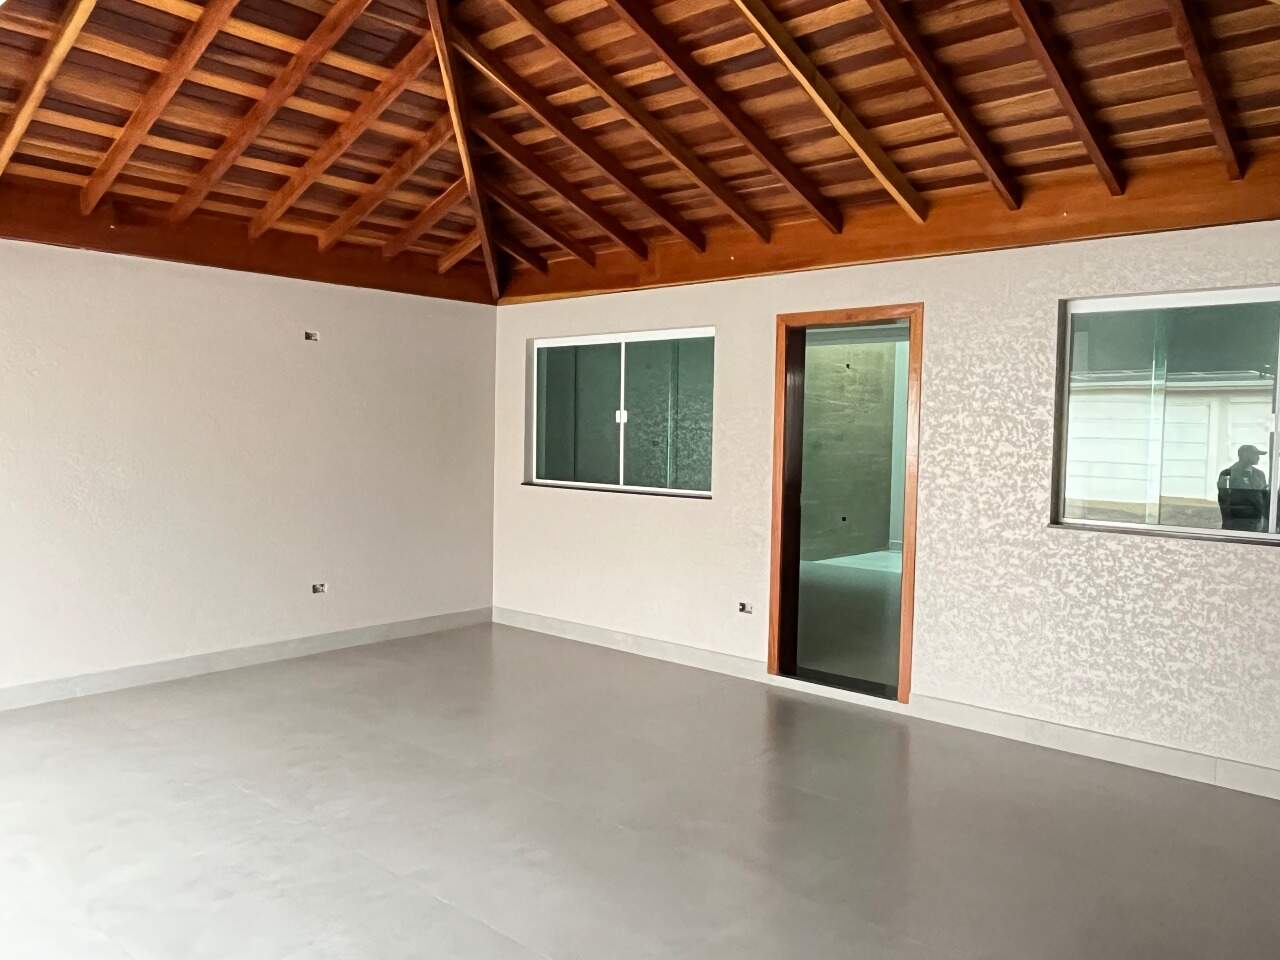 Casa à venda, 3 quartos, sendo 1 suíte, 2 vagas, no bairro Água Branca em Piracicaba - SP